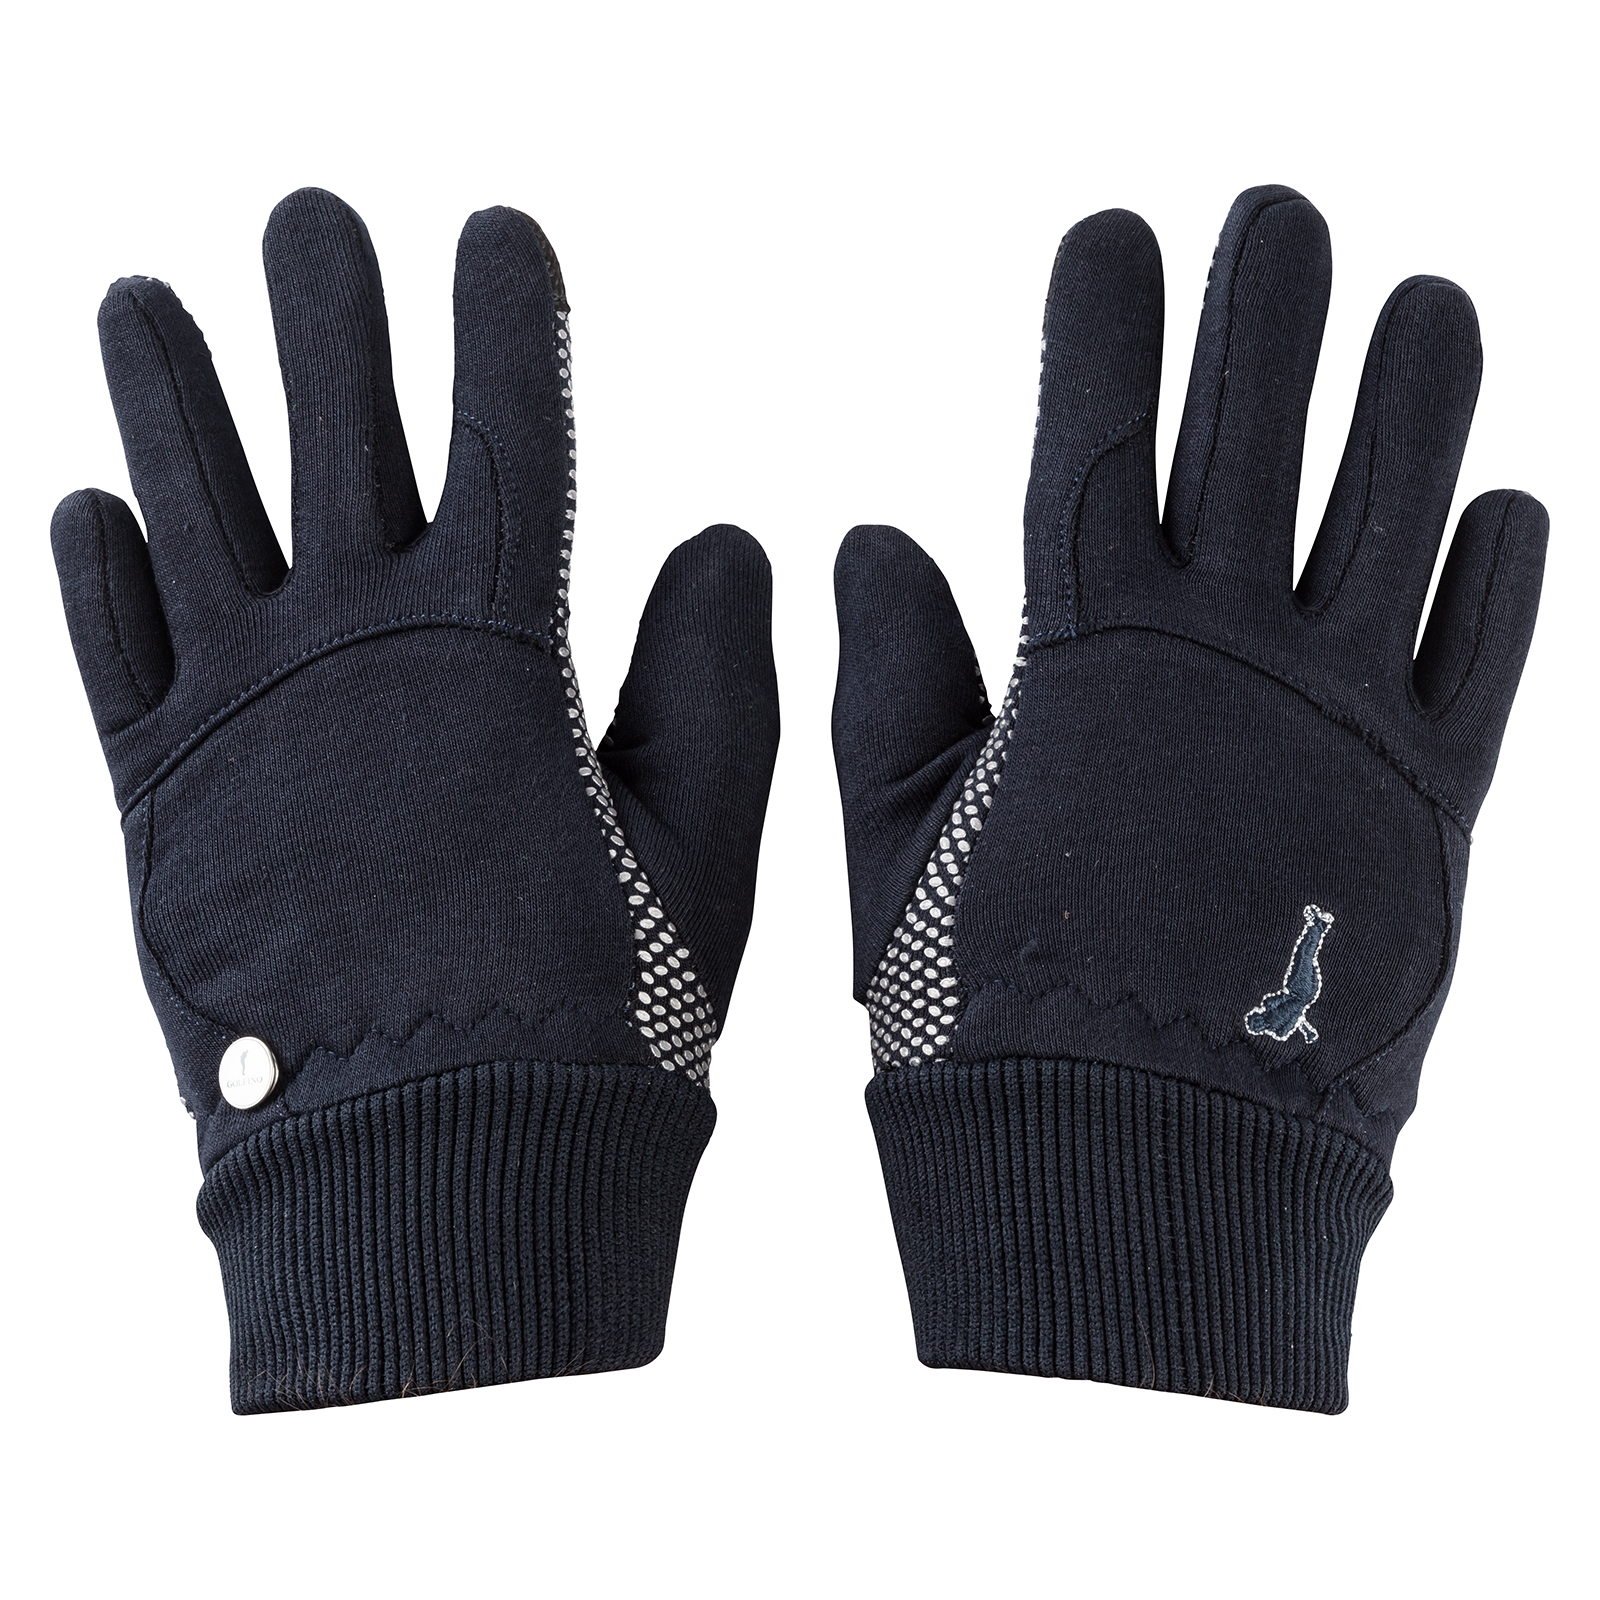 Warm ladies' gloves 